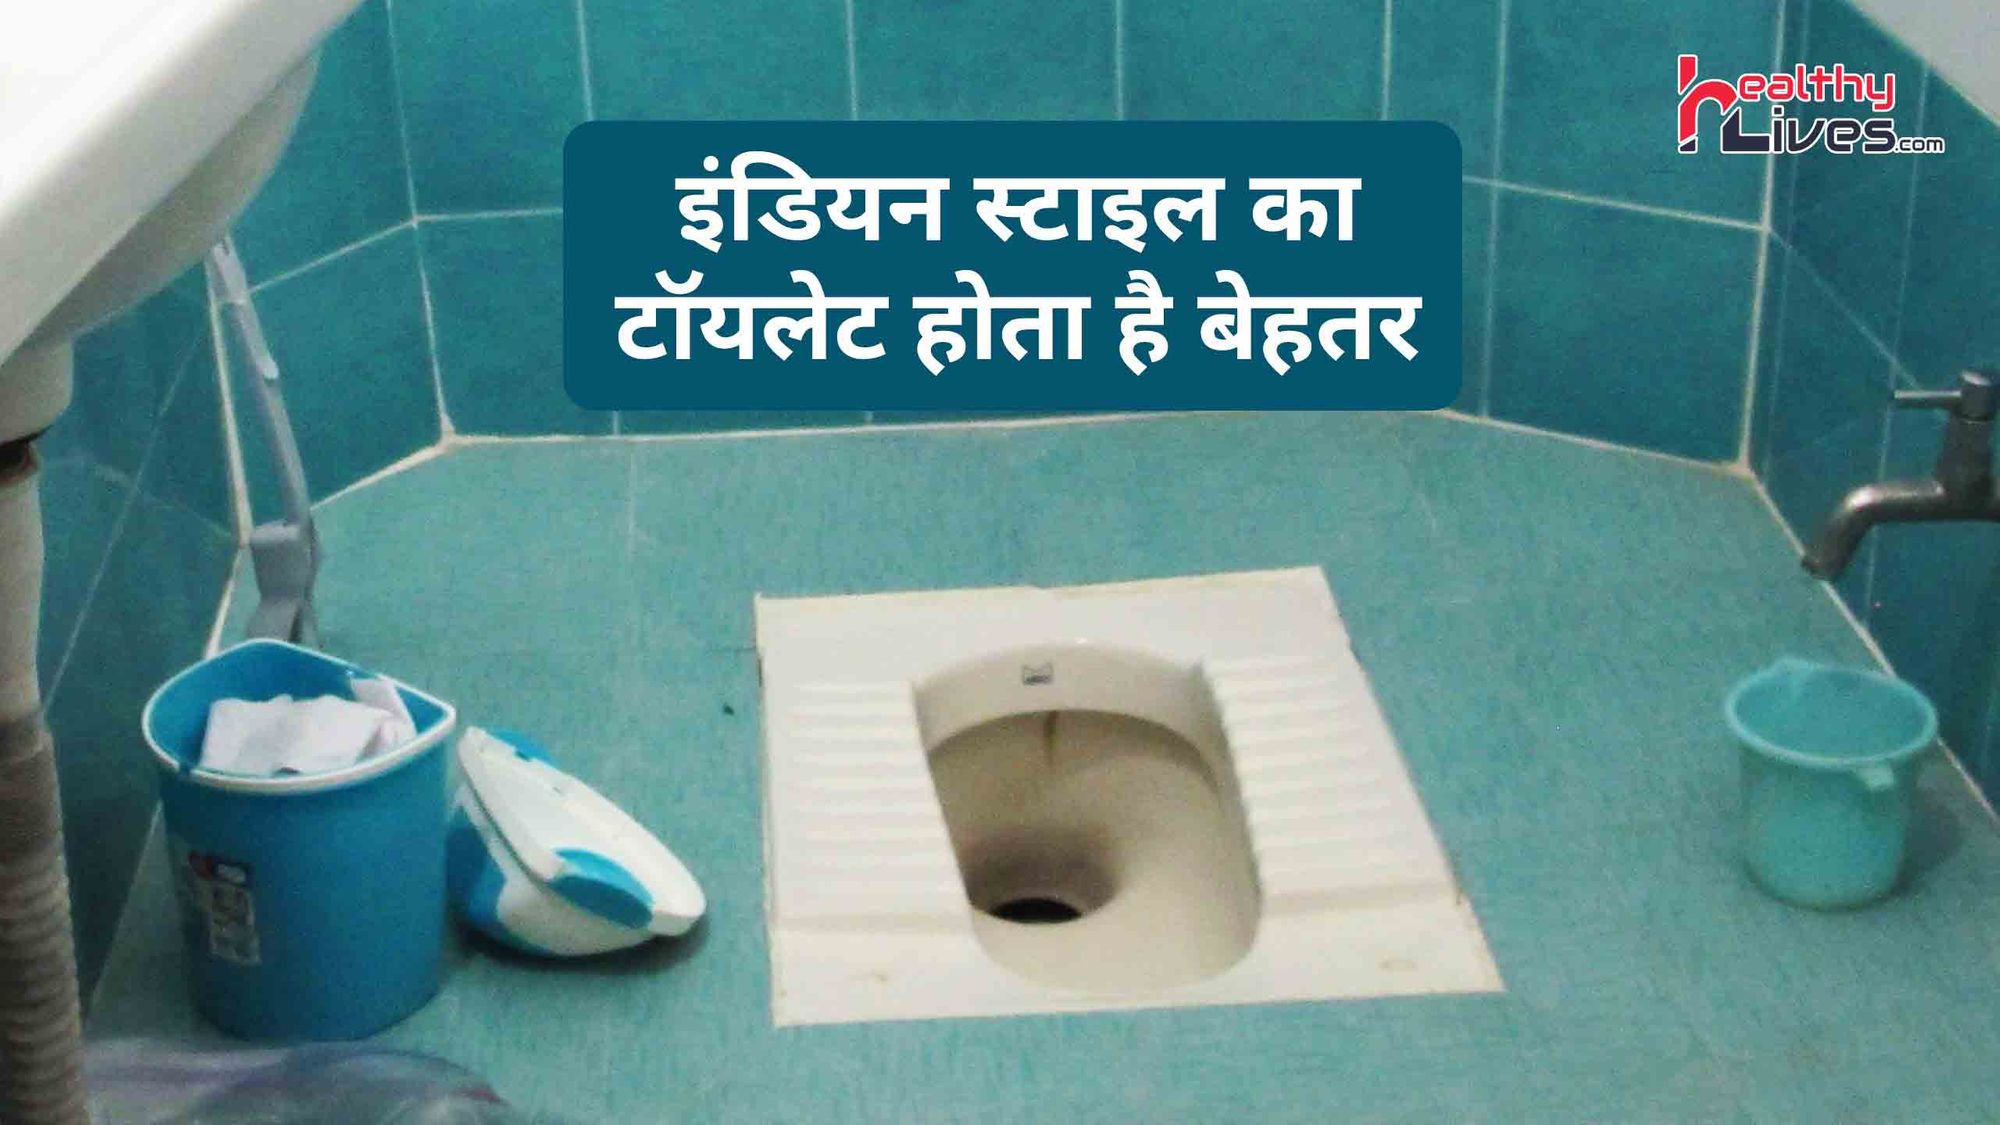 Benefits Of Indian Toilet: पाचन से लेकर कैंसर तक में दे राहत इंडियन स्टाइल का टॉयलेट